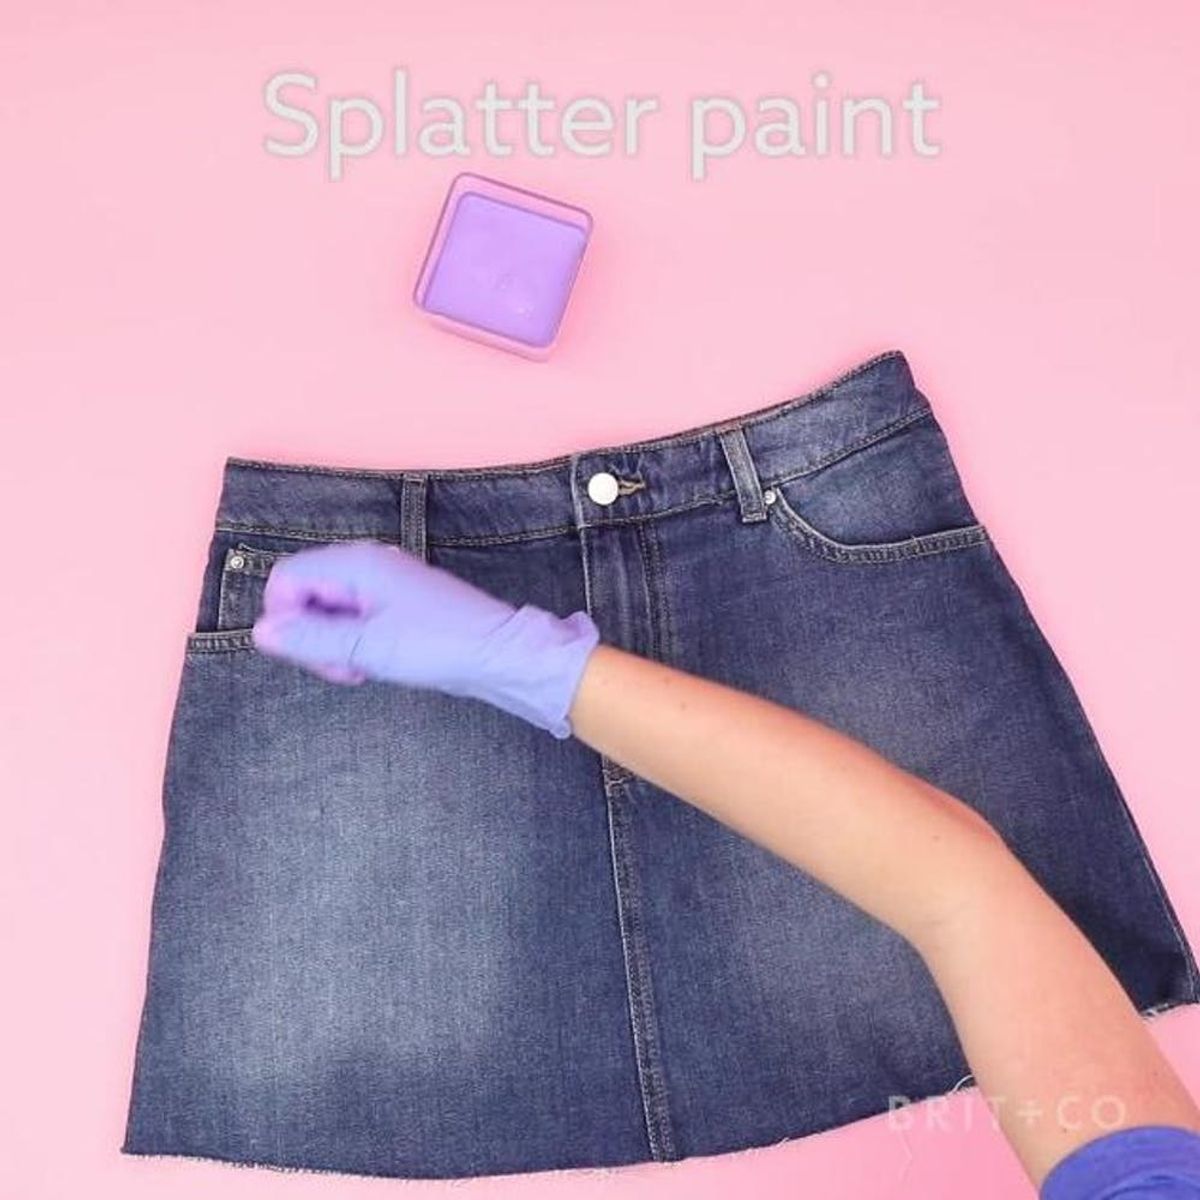 How to DIY a Splatter-Paint Skirt